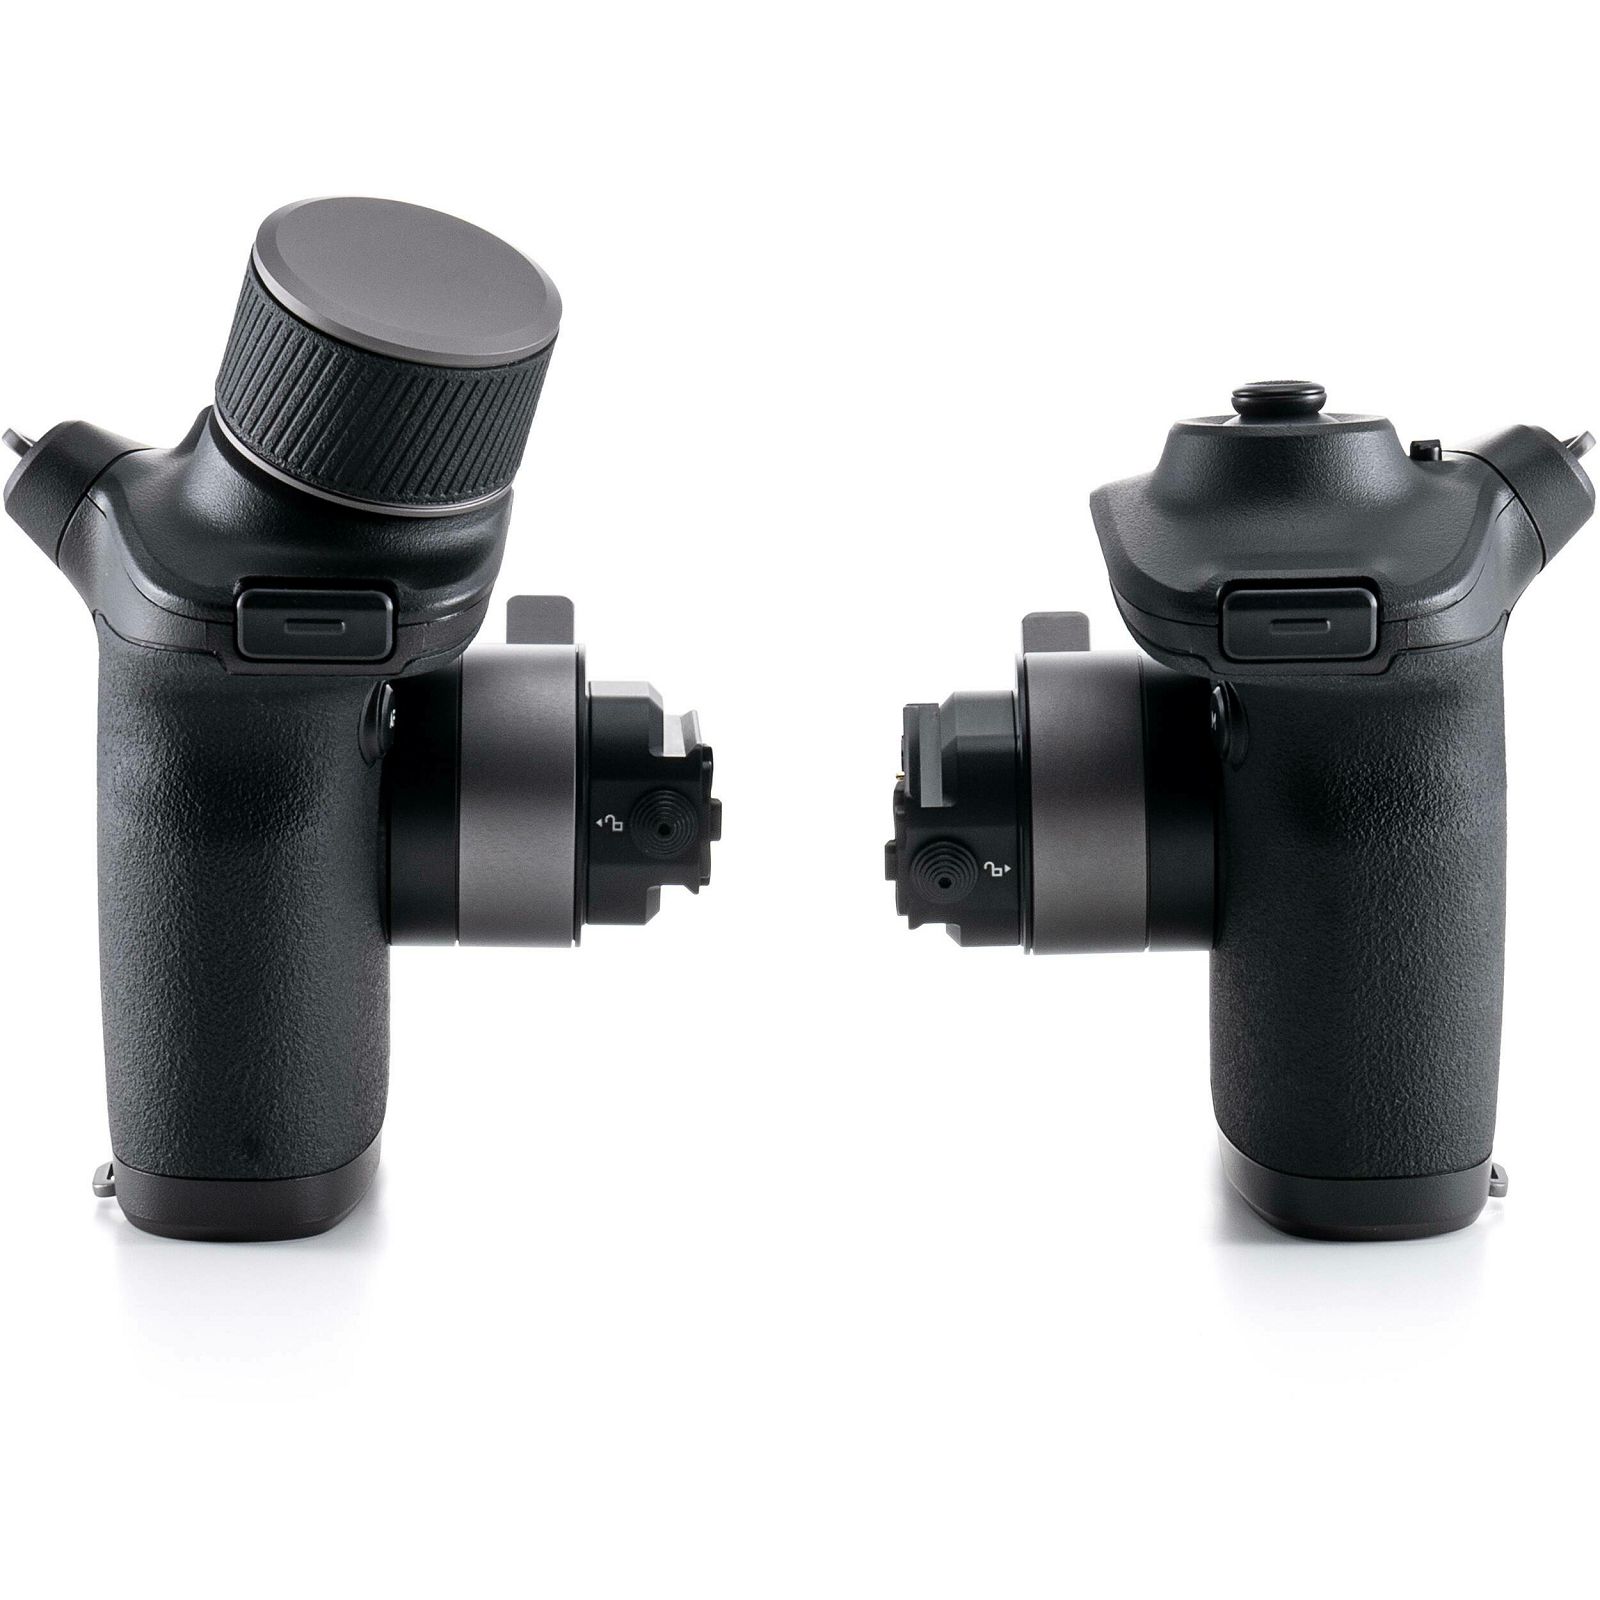 DJI Ronin 4D 6K 4-Axis gimbal Stabilizer 4D motorizirani stabilizator s kamerom za snimanje (CP.RN.00000176.01)